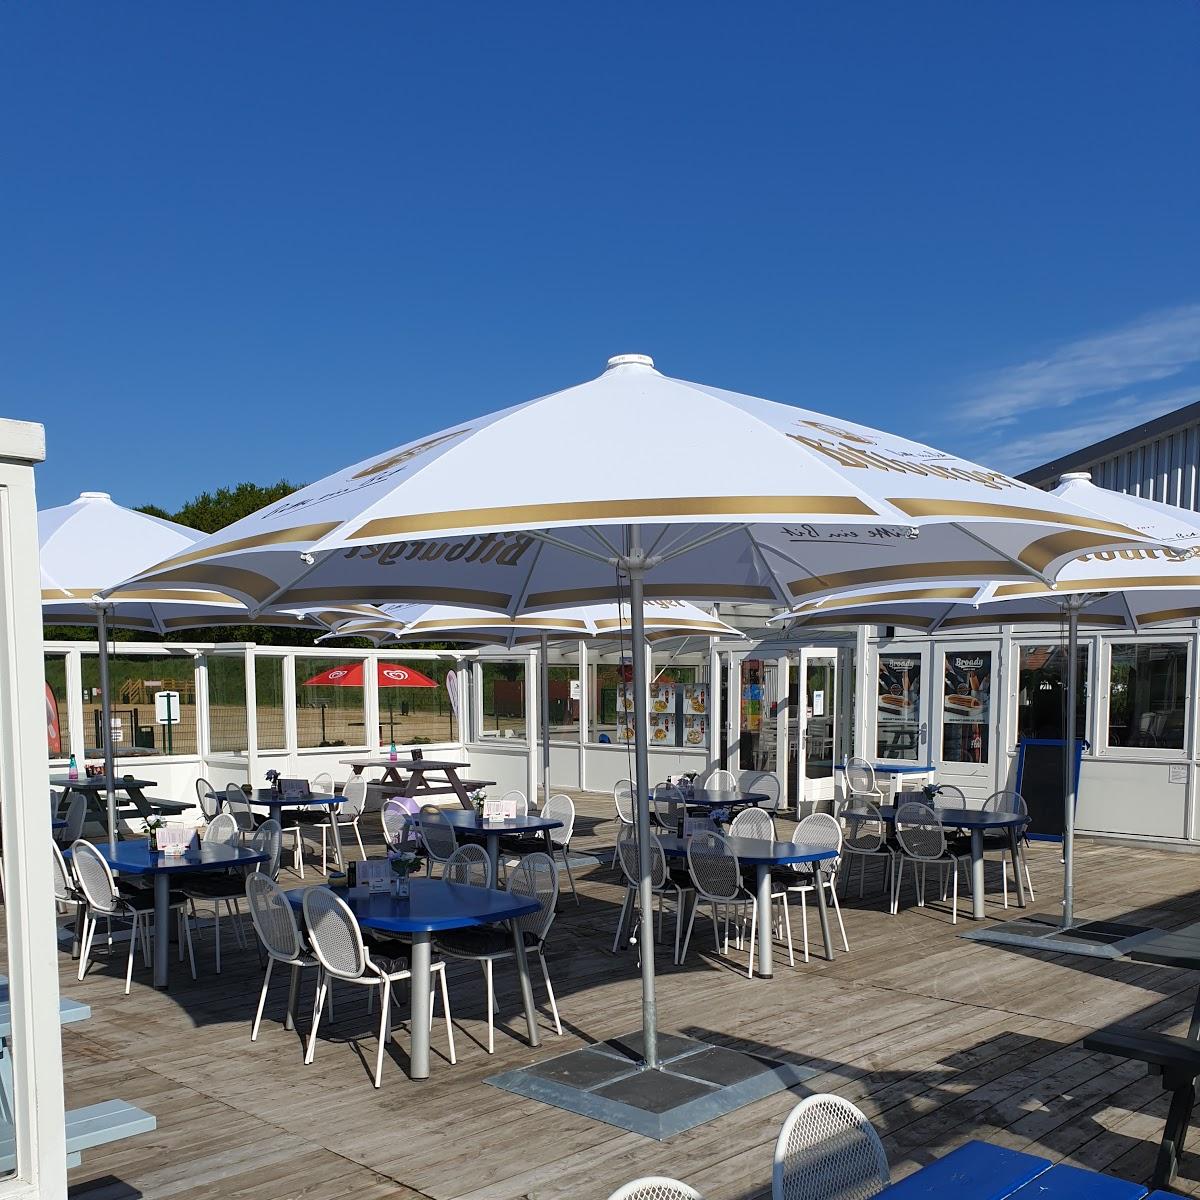 Restaurant "Beach point" in Molbergen